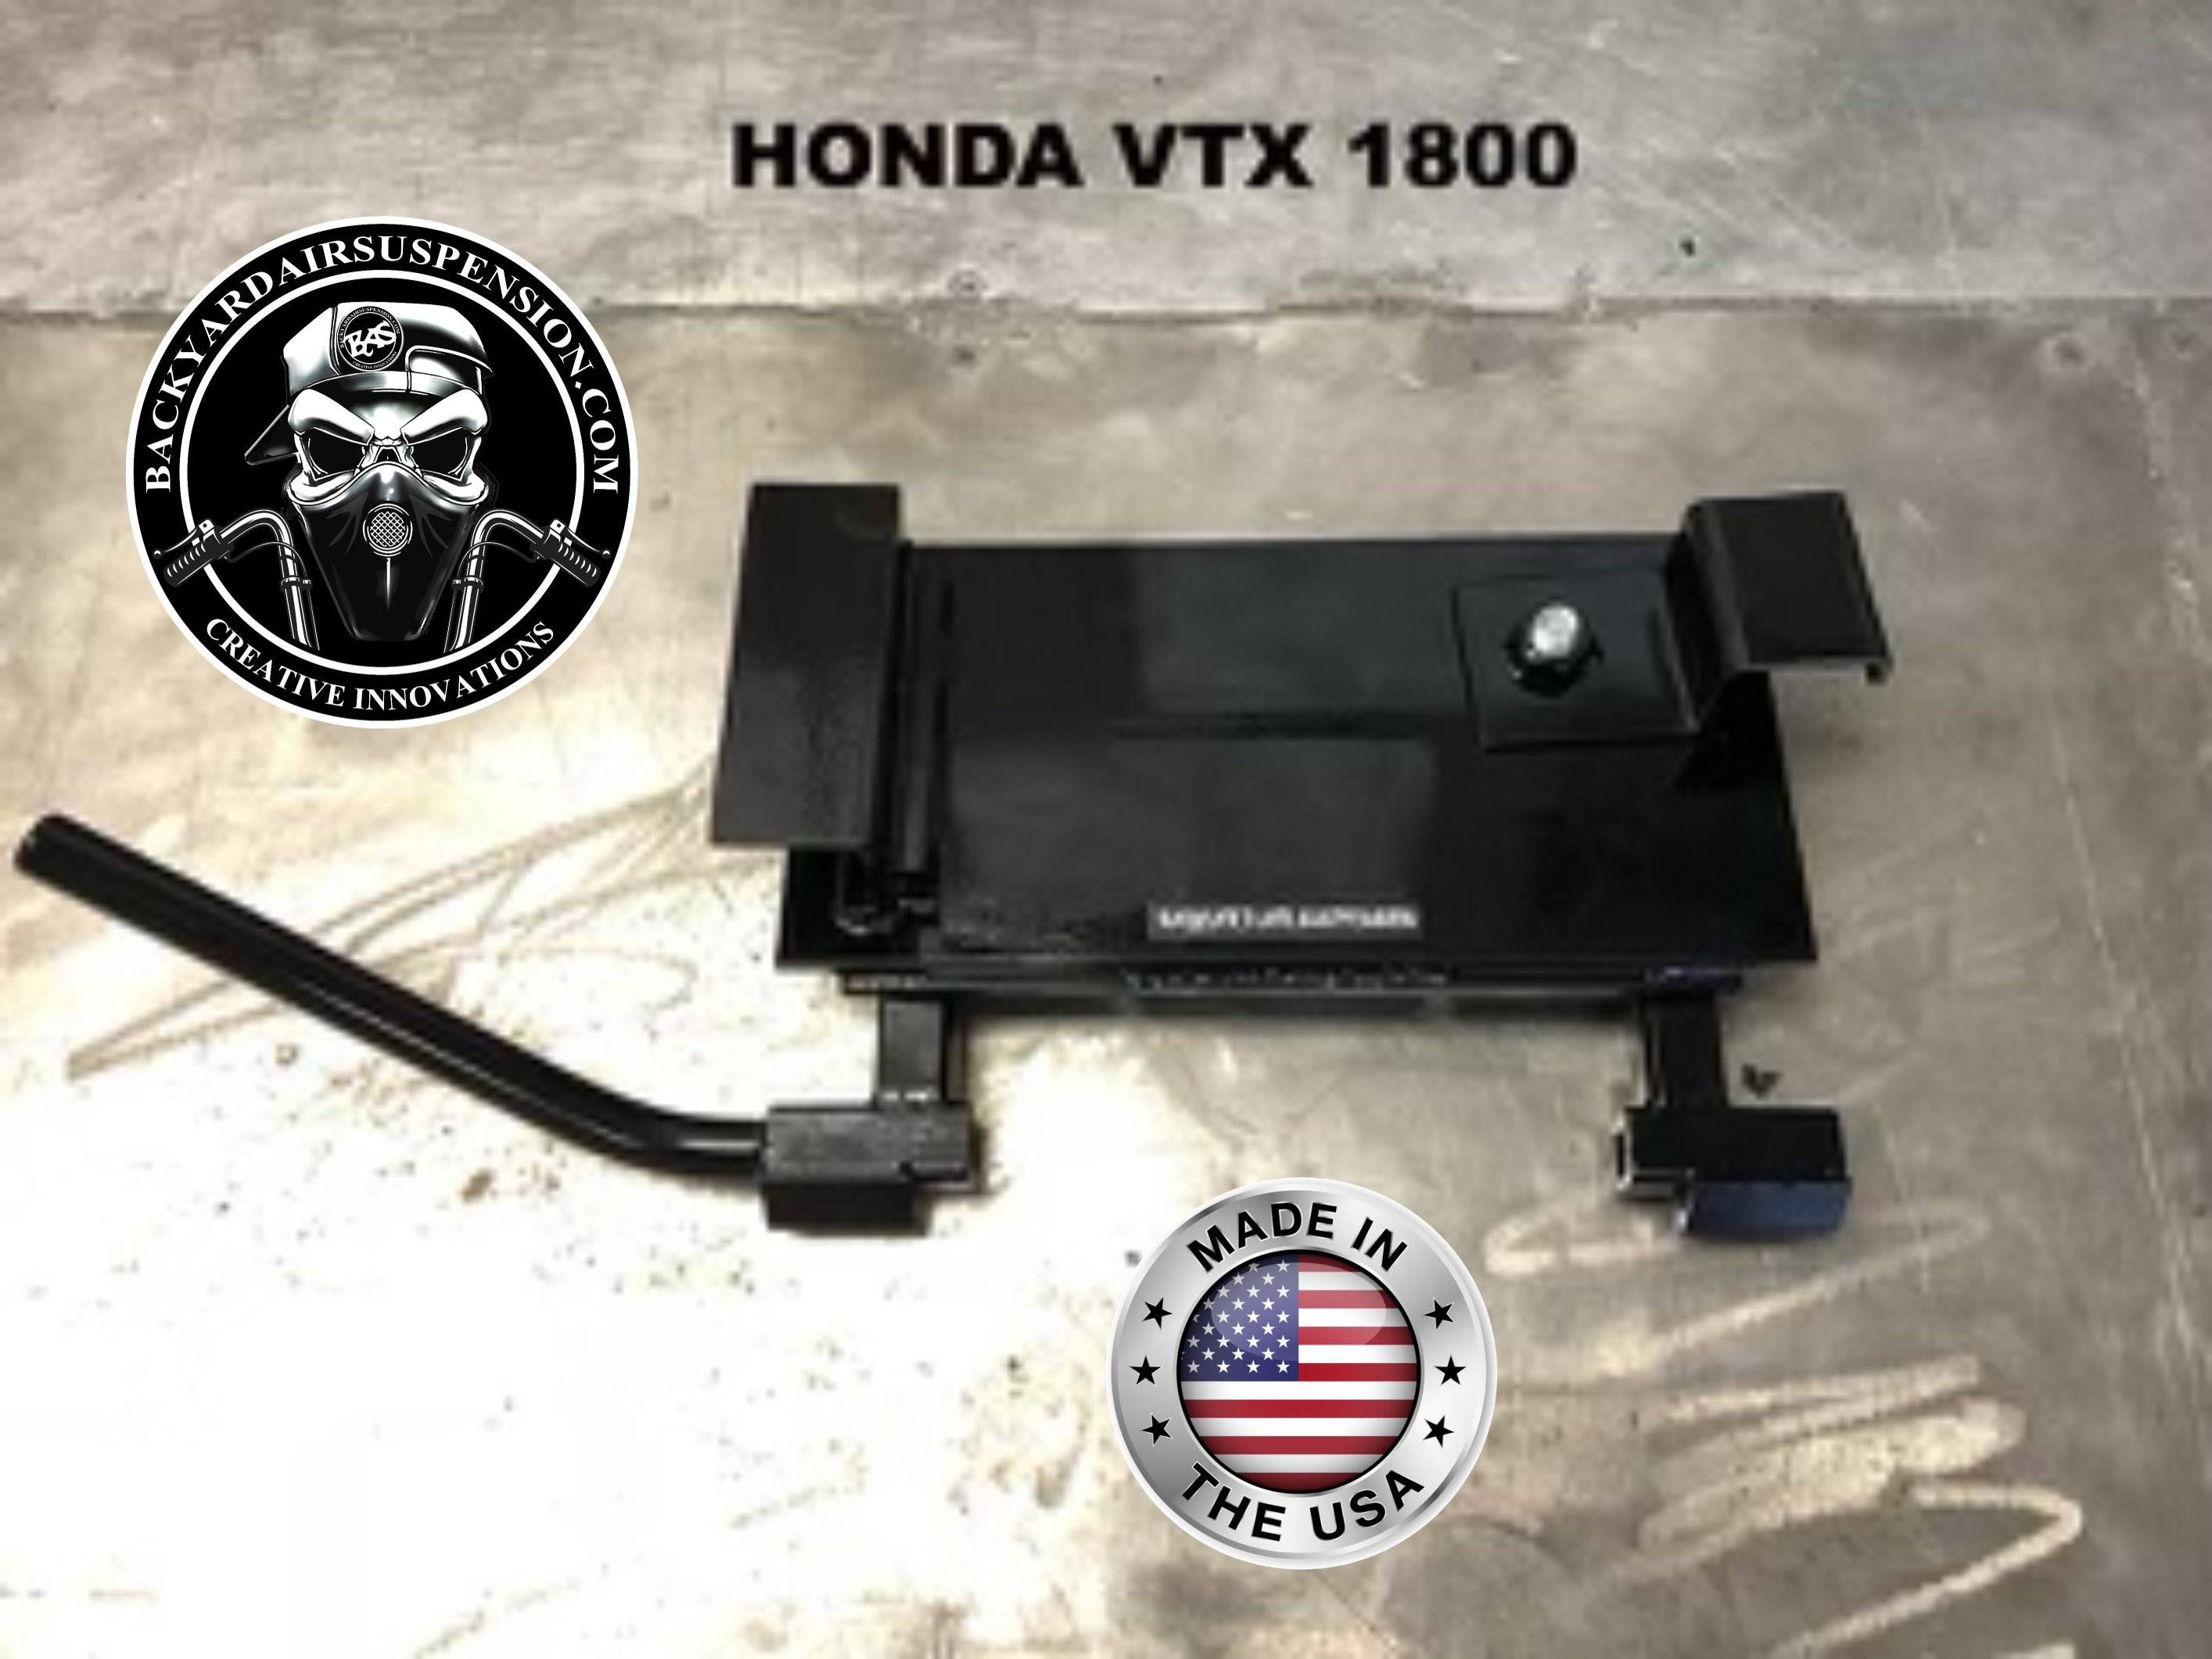 Honda VTX 1800 Manual Center Stand - Backyard Air Suspension & Innovations, LLC.